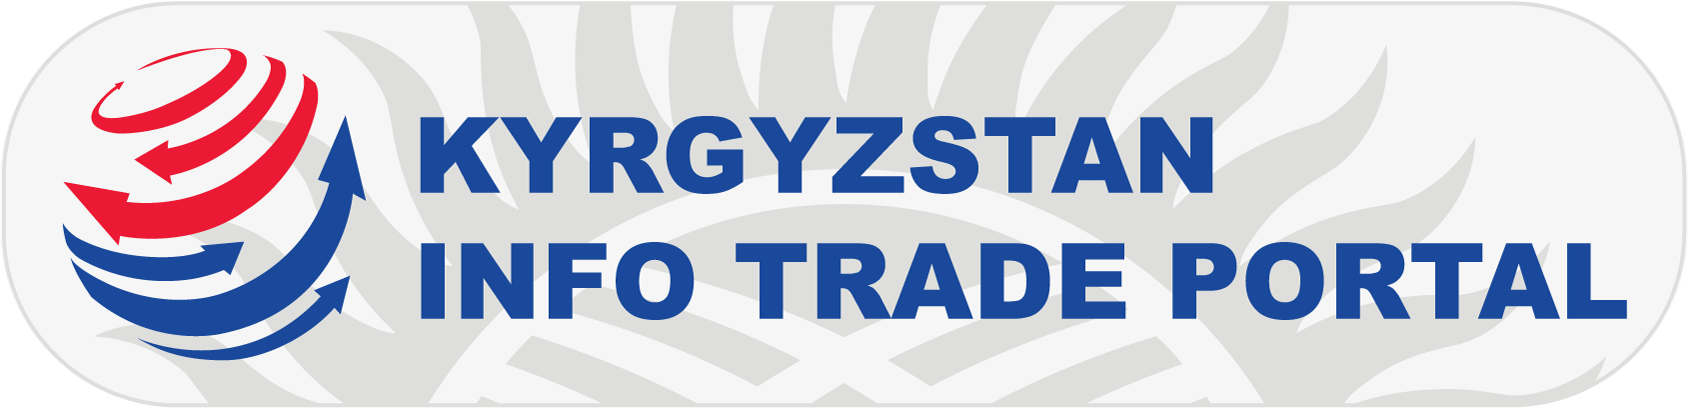 Kyrgyzstan Info Trade Portal